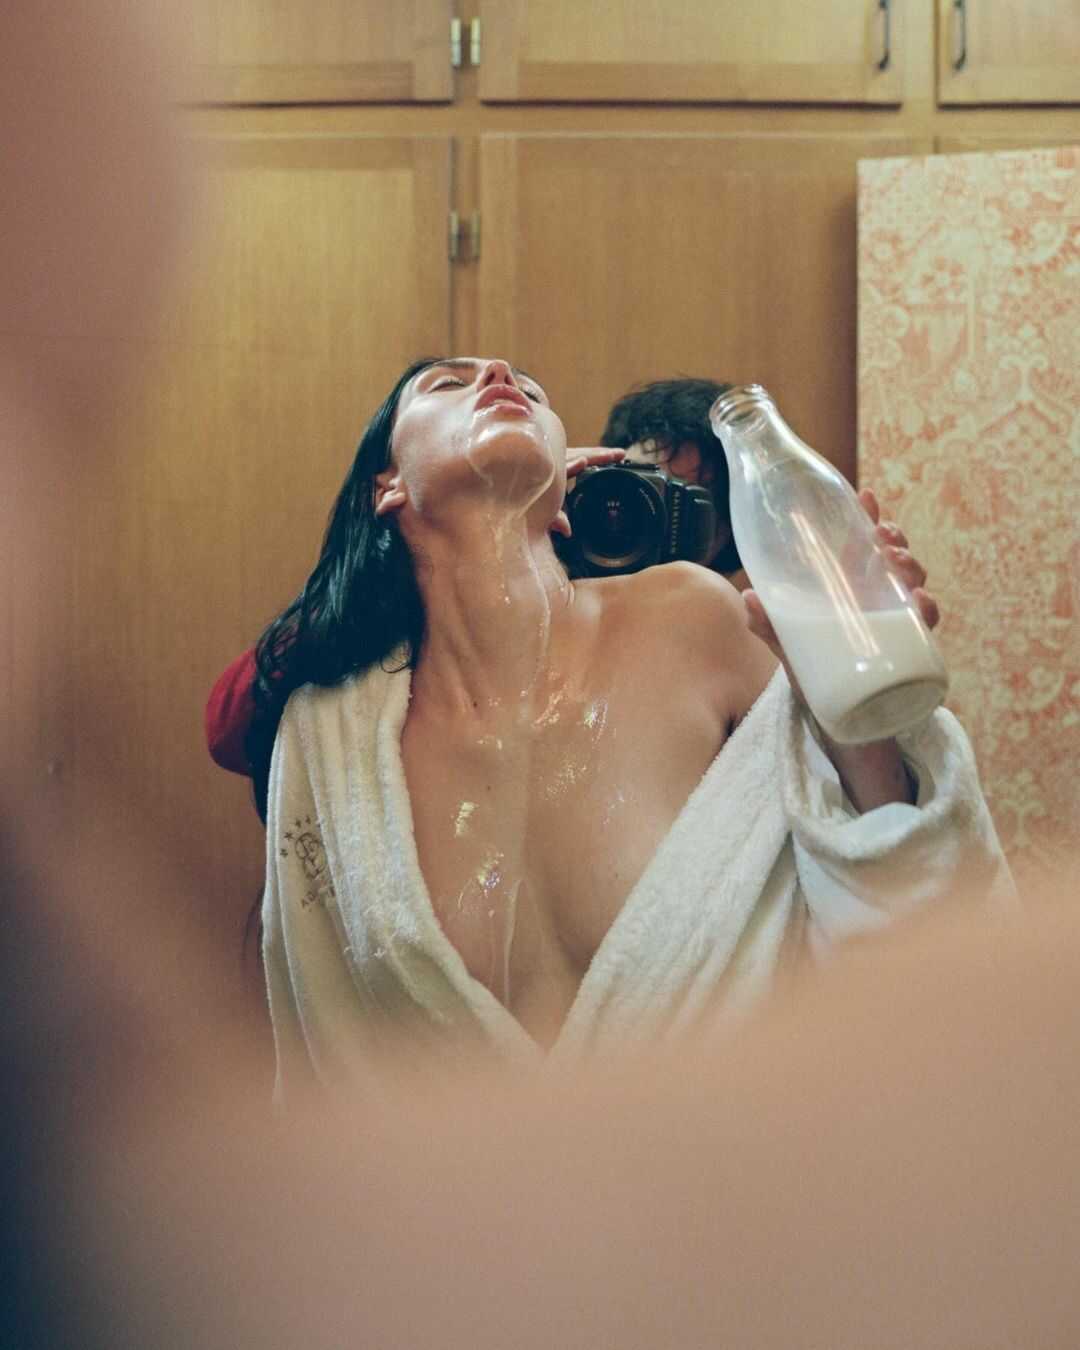 Η μουνάρα μοντέλο Amelia Gray Hamlin σε γυμνές φωτογραφίες